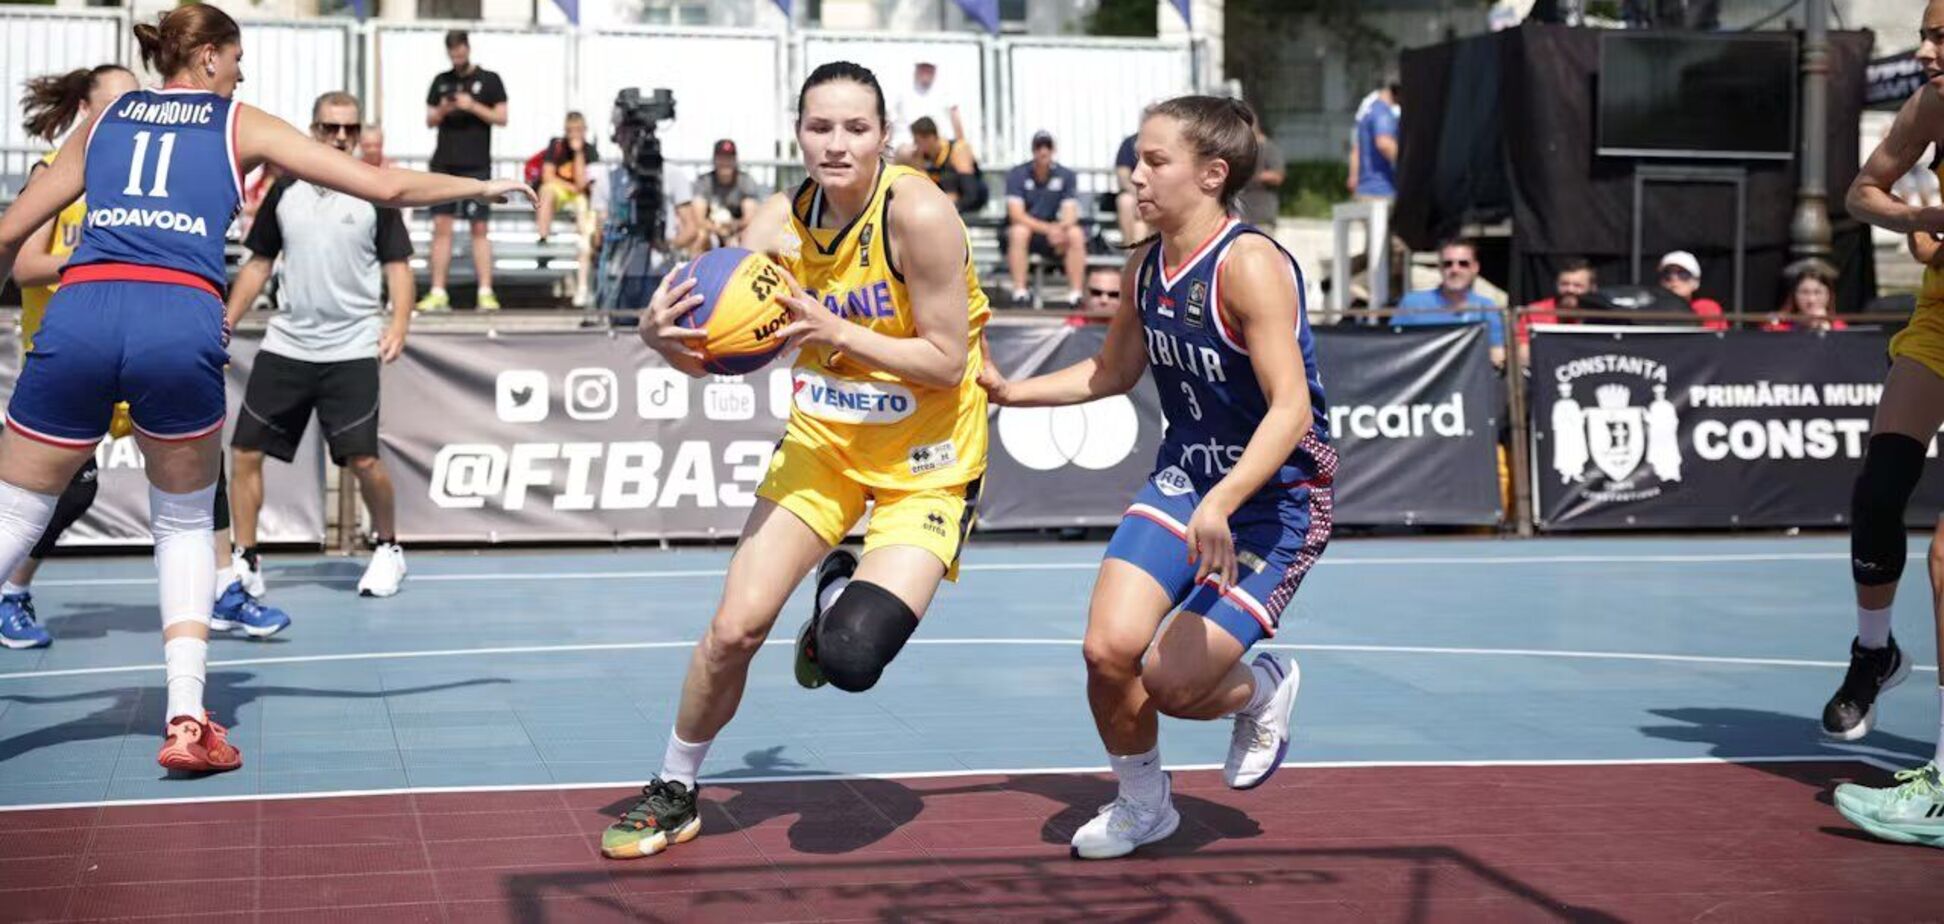 Женская сборная Украины одержала важную победу над Испанией в отборе на чемпионат Европы по баскетболу 3х3